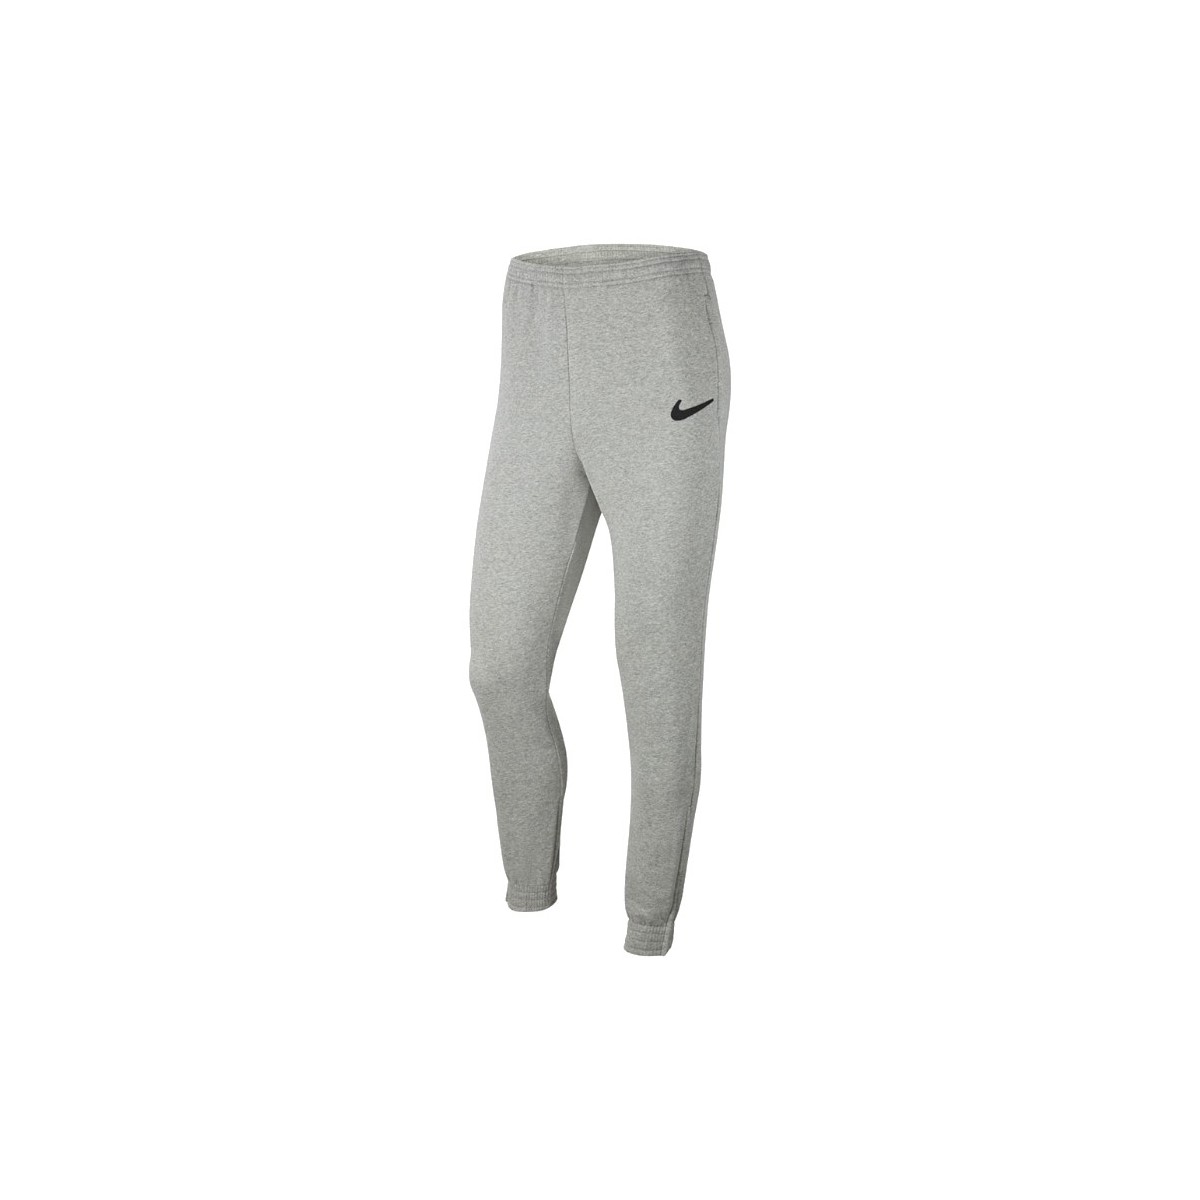 tekstylia Męskie Spodnie dresowe Nike Park 20 Fleece Pants Szary